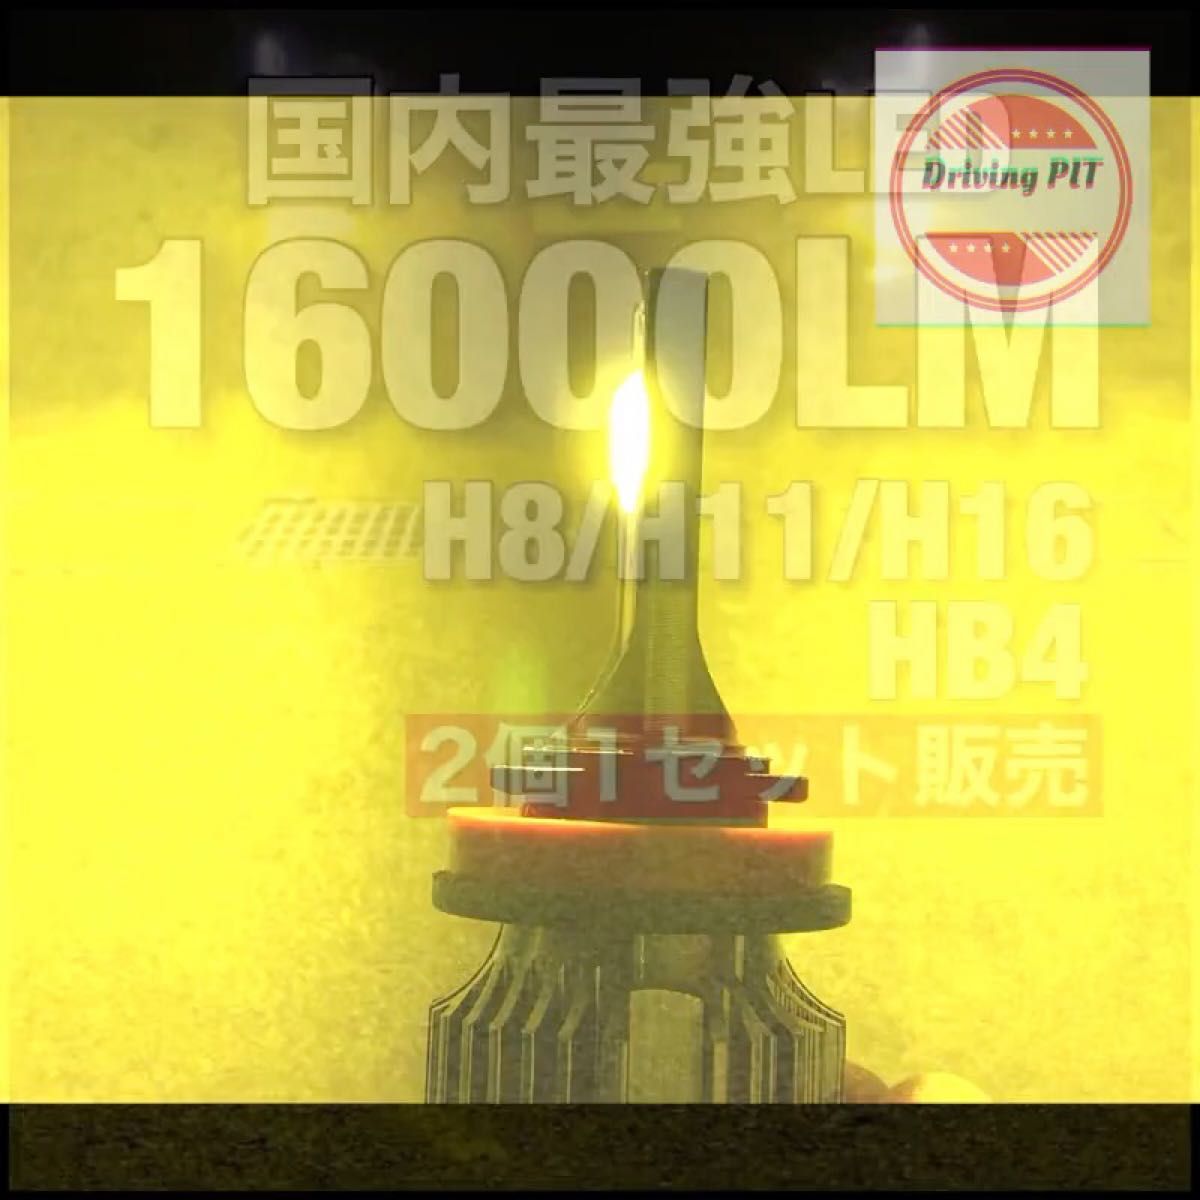 Led フォグ　16000lm 黄色 LEDフォグランプ スーパーイエロー トヨタ LEDフォグランプ 高品質 車検対応